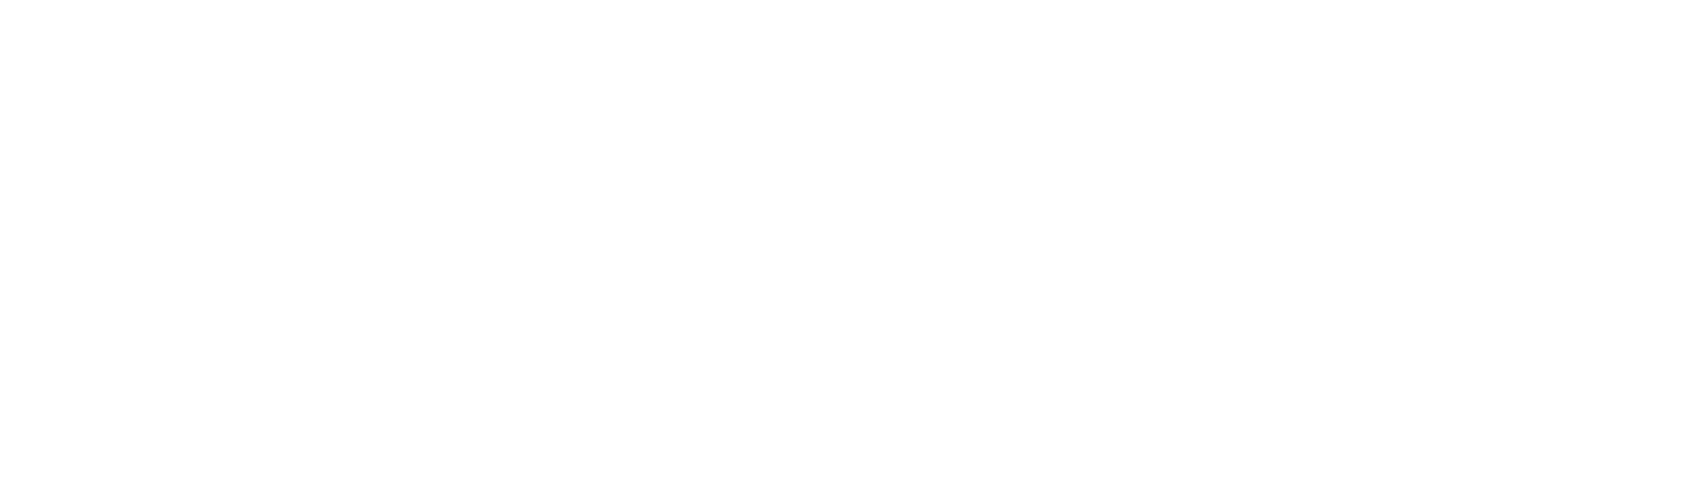 supermehrkampf logo weiss header